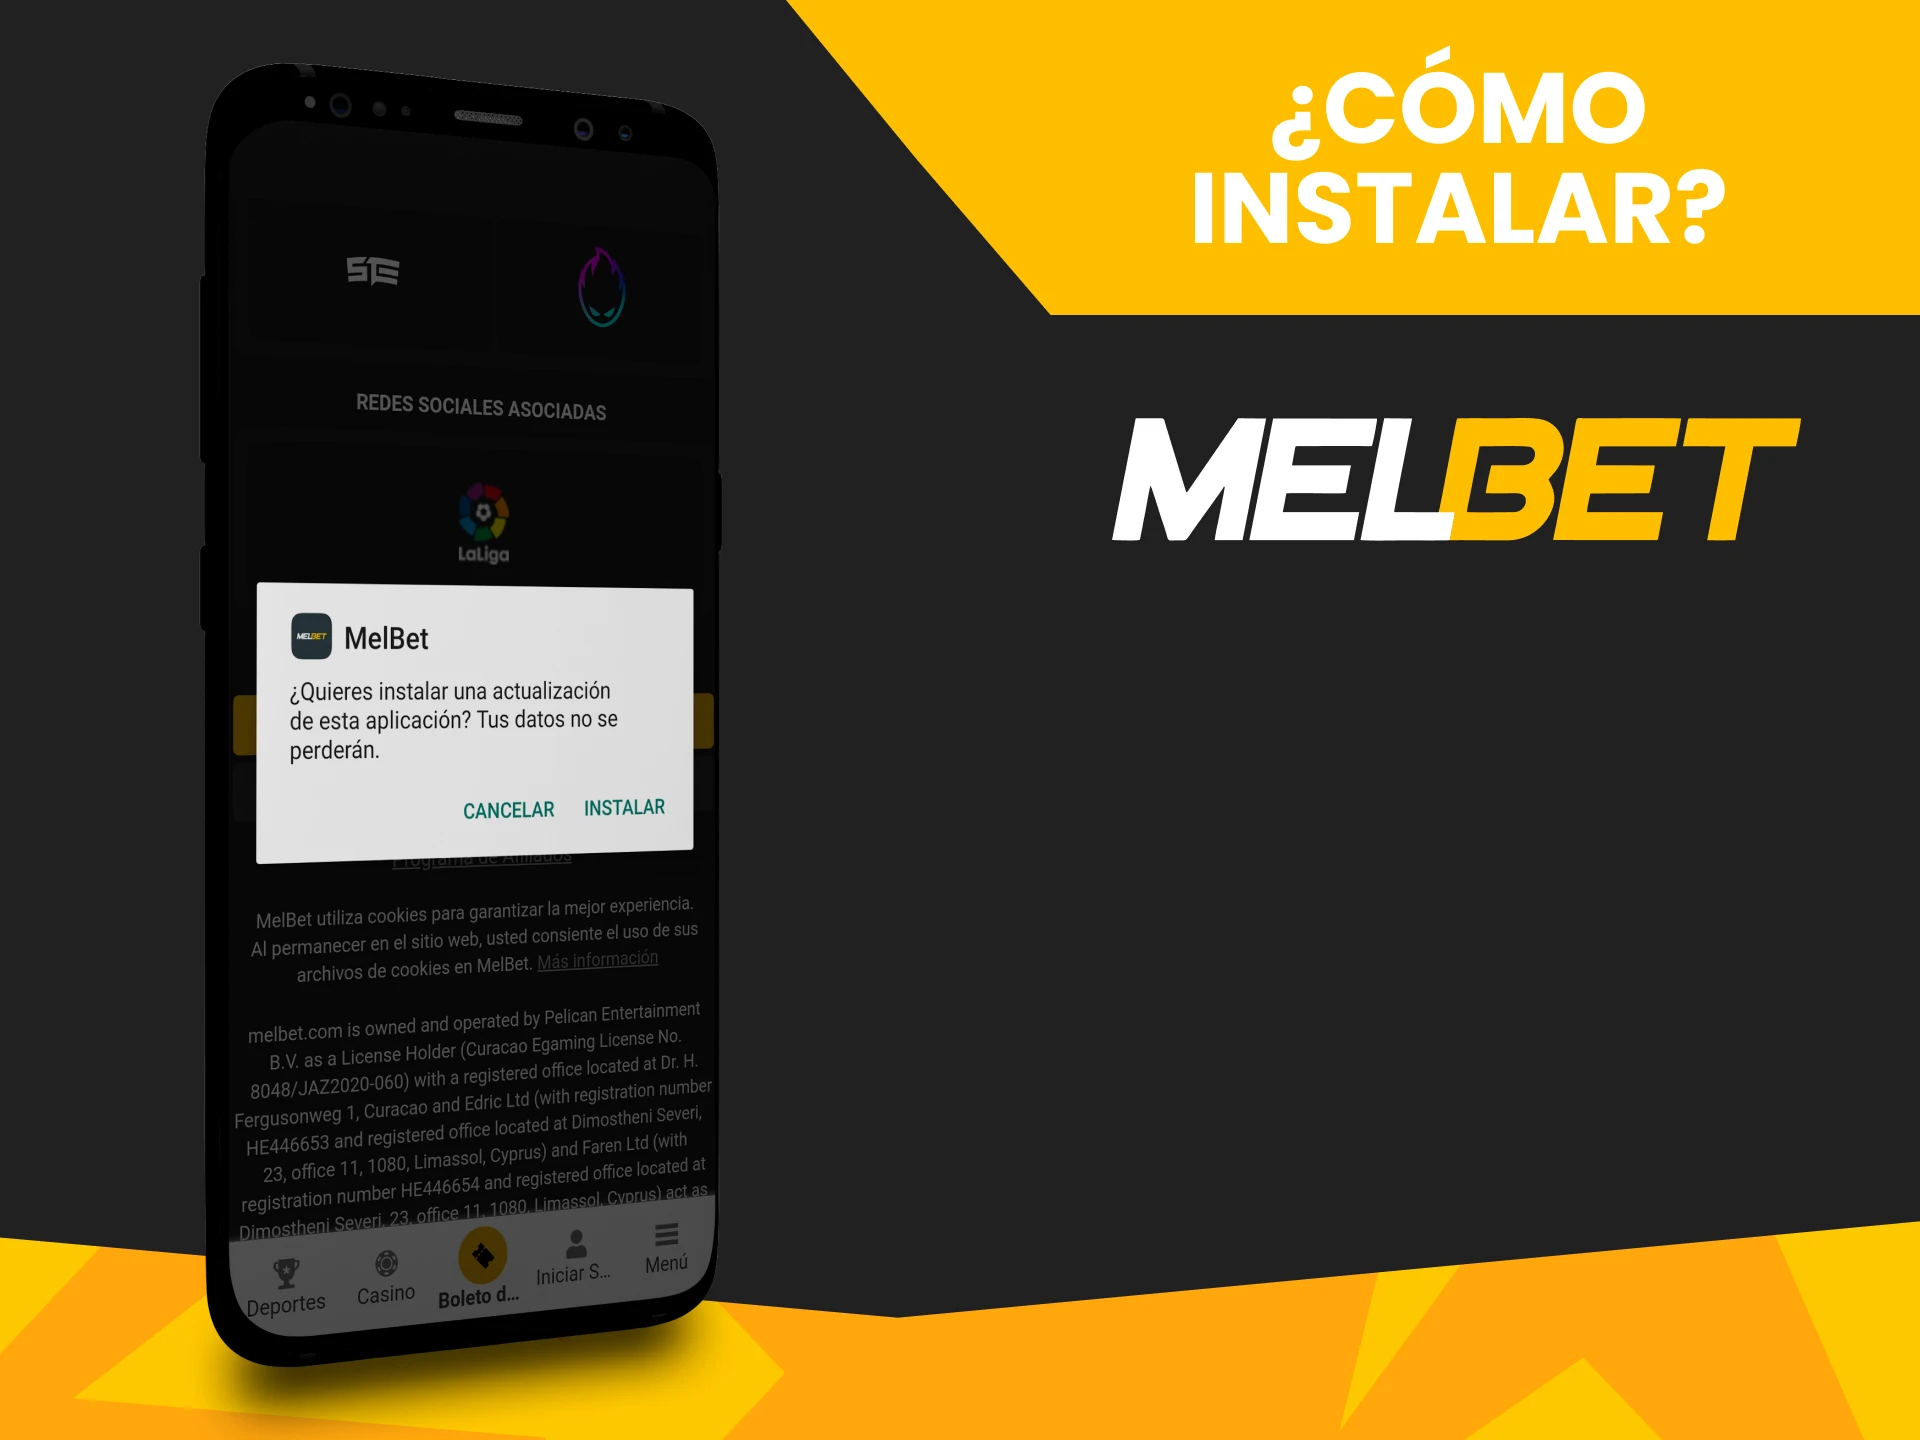 Le mostraremos cómo instalar la aplicación Melbet.